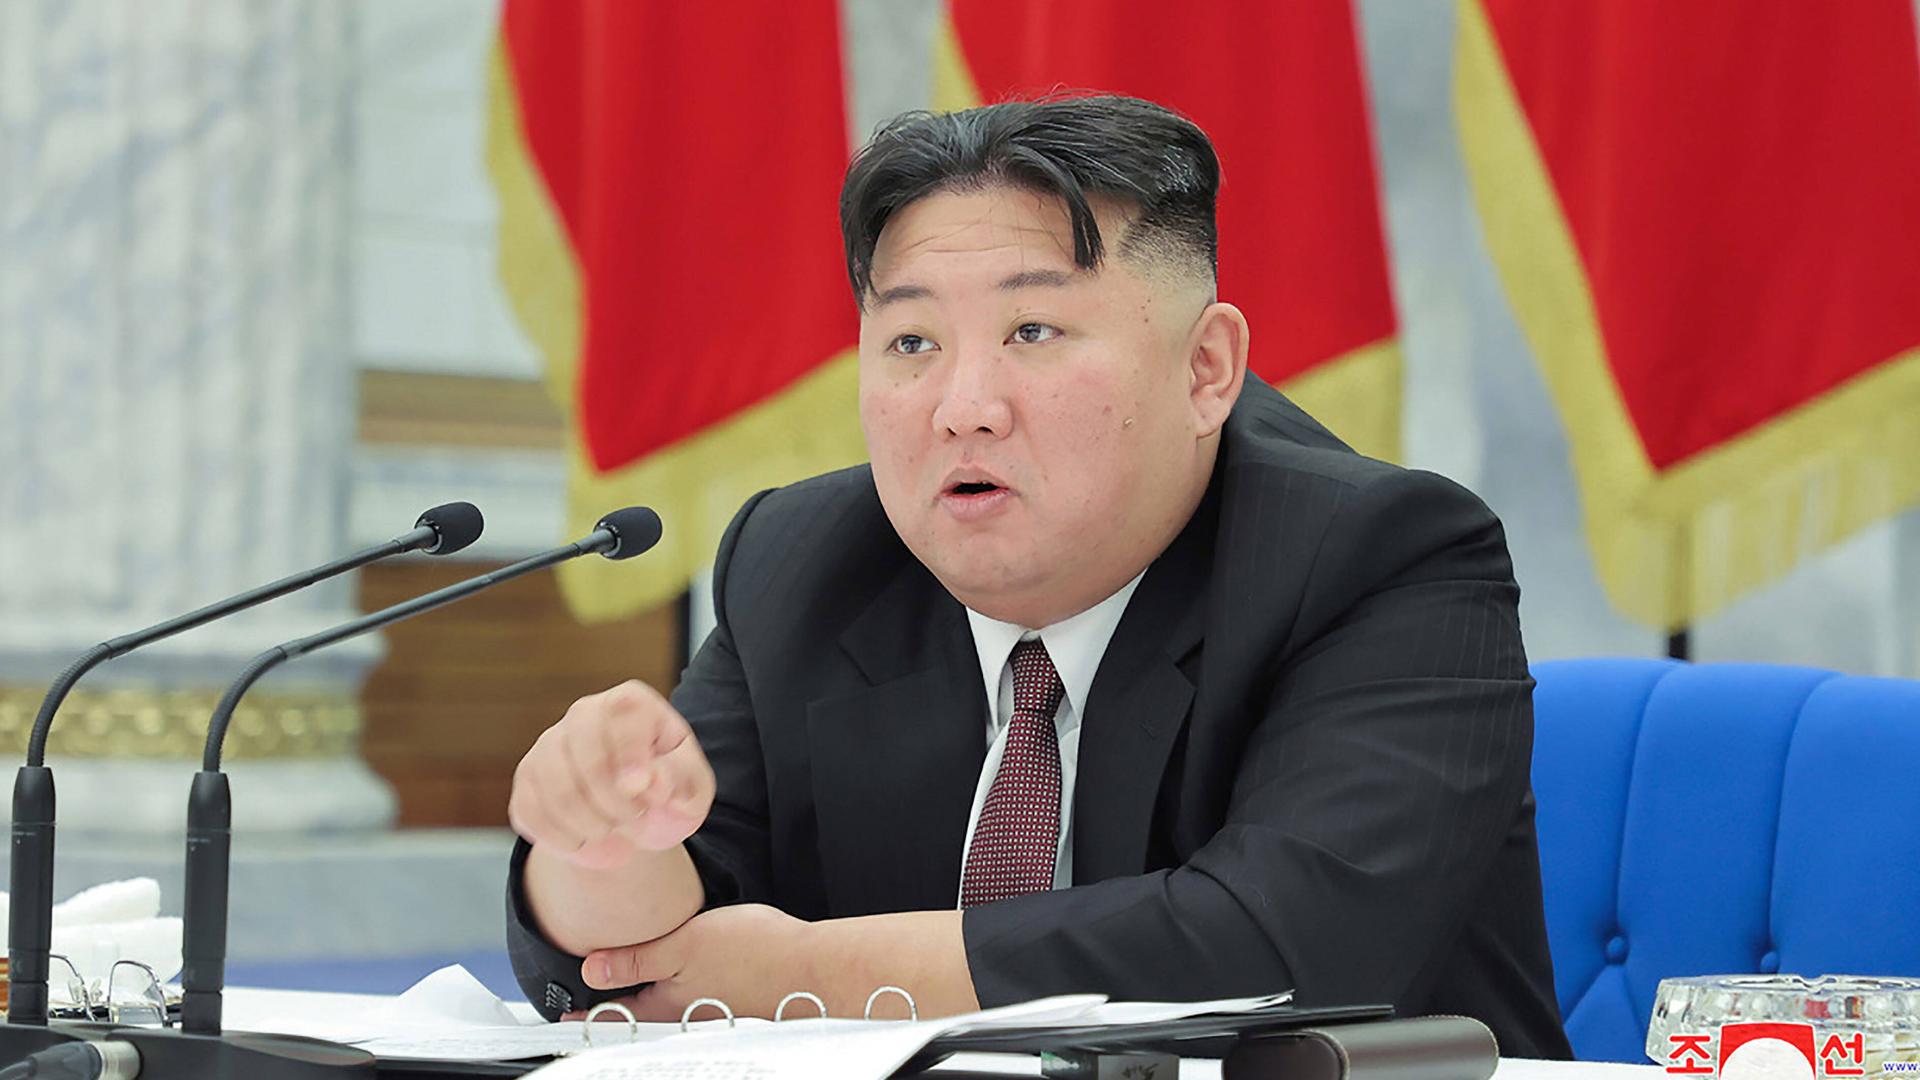 Das Bild zeigt den nordkoreanischen Machthaber Kim Jong-un sitzend während eines Vortrags. Im Hintergrund sind Flaggen zu sehen.